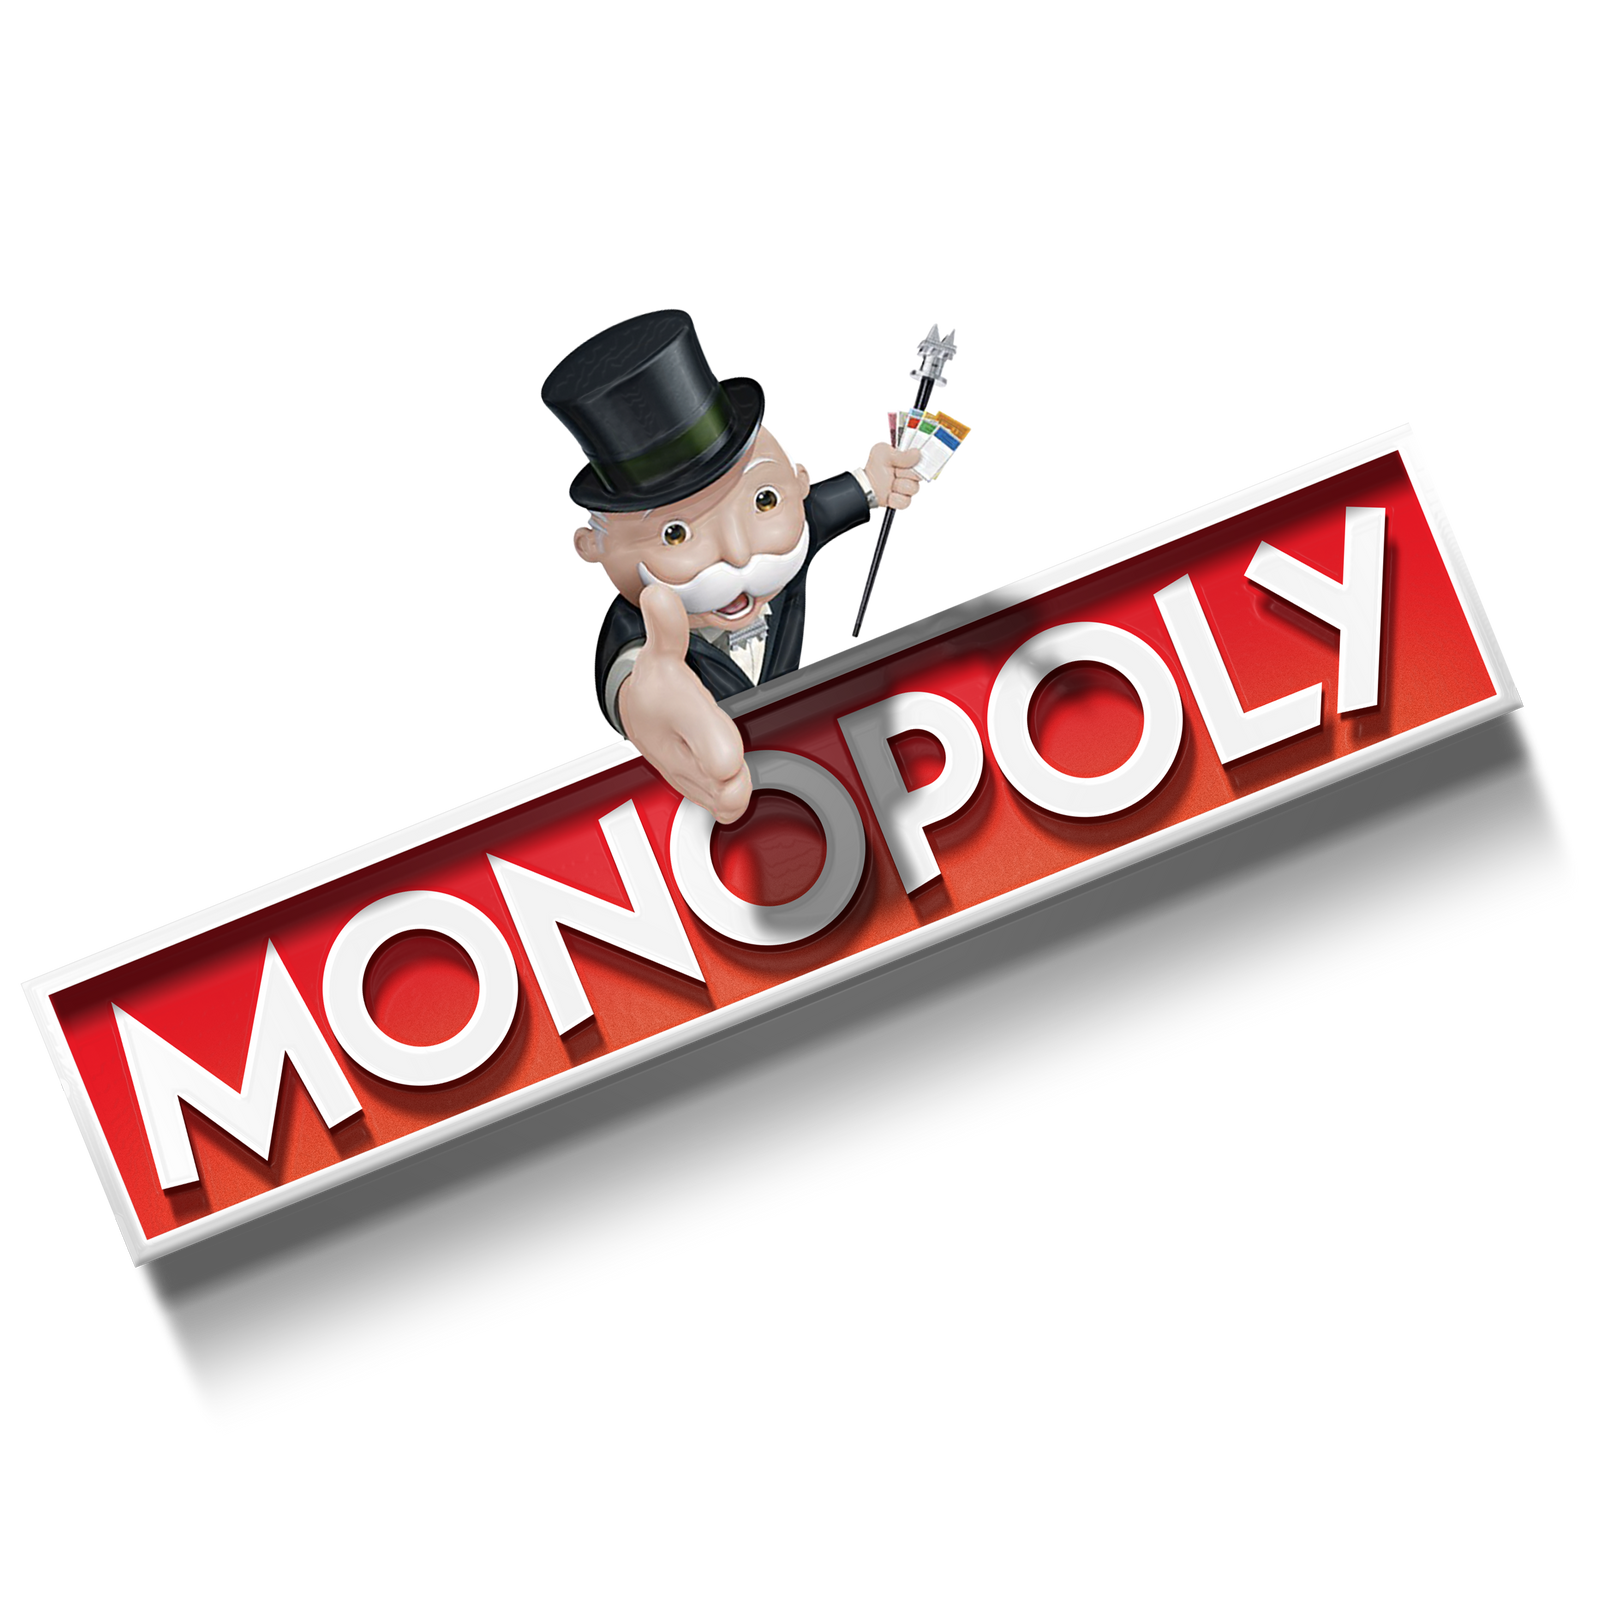 Monopoly logo.